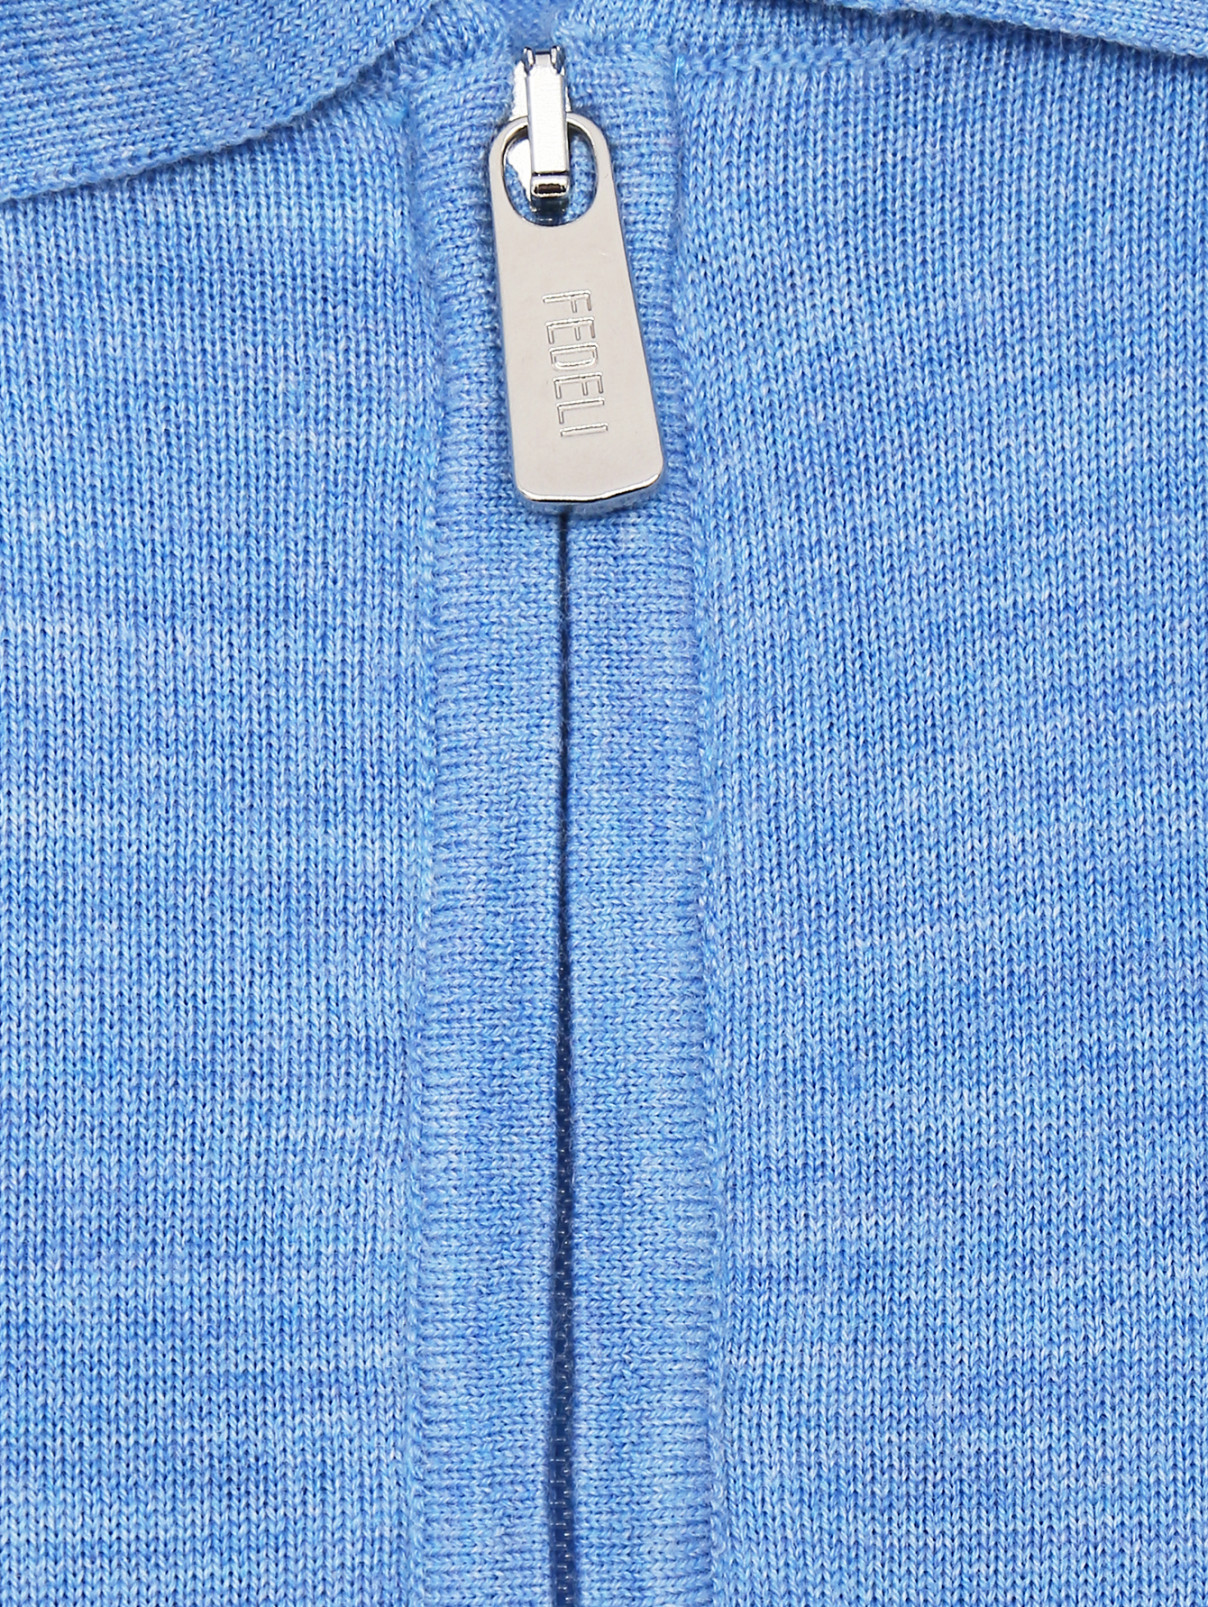 Джемпер из шерсти с воротом на молнии Fedeli  –  Деталь  – Цвет:  Синий